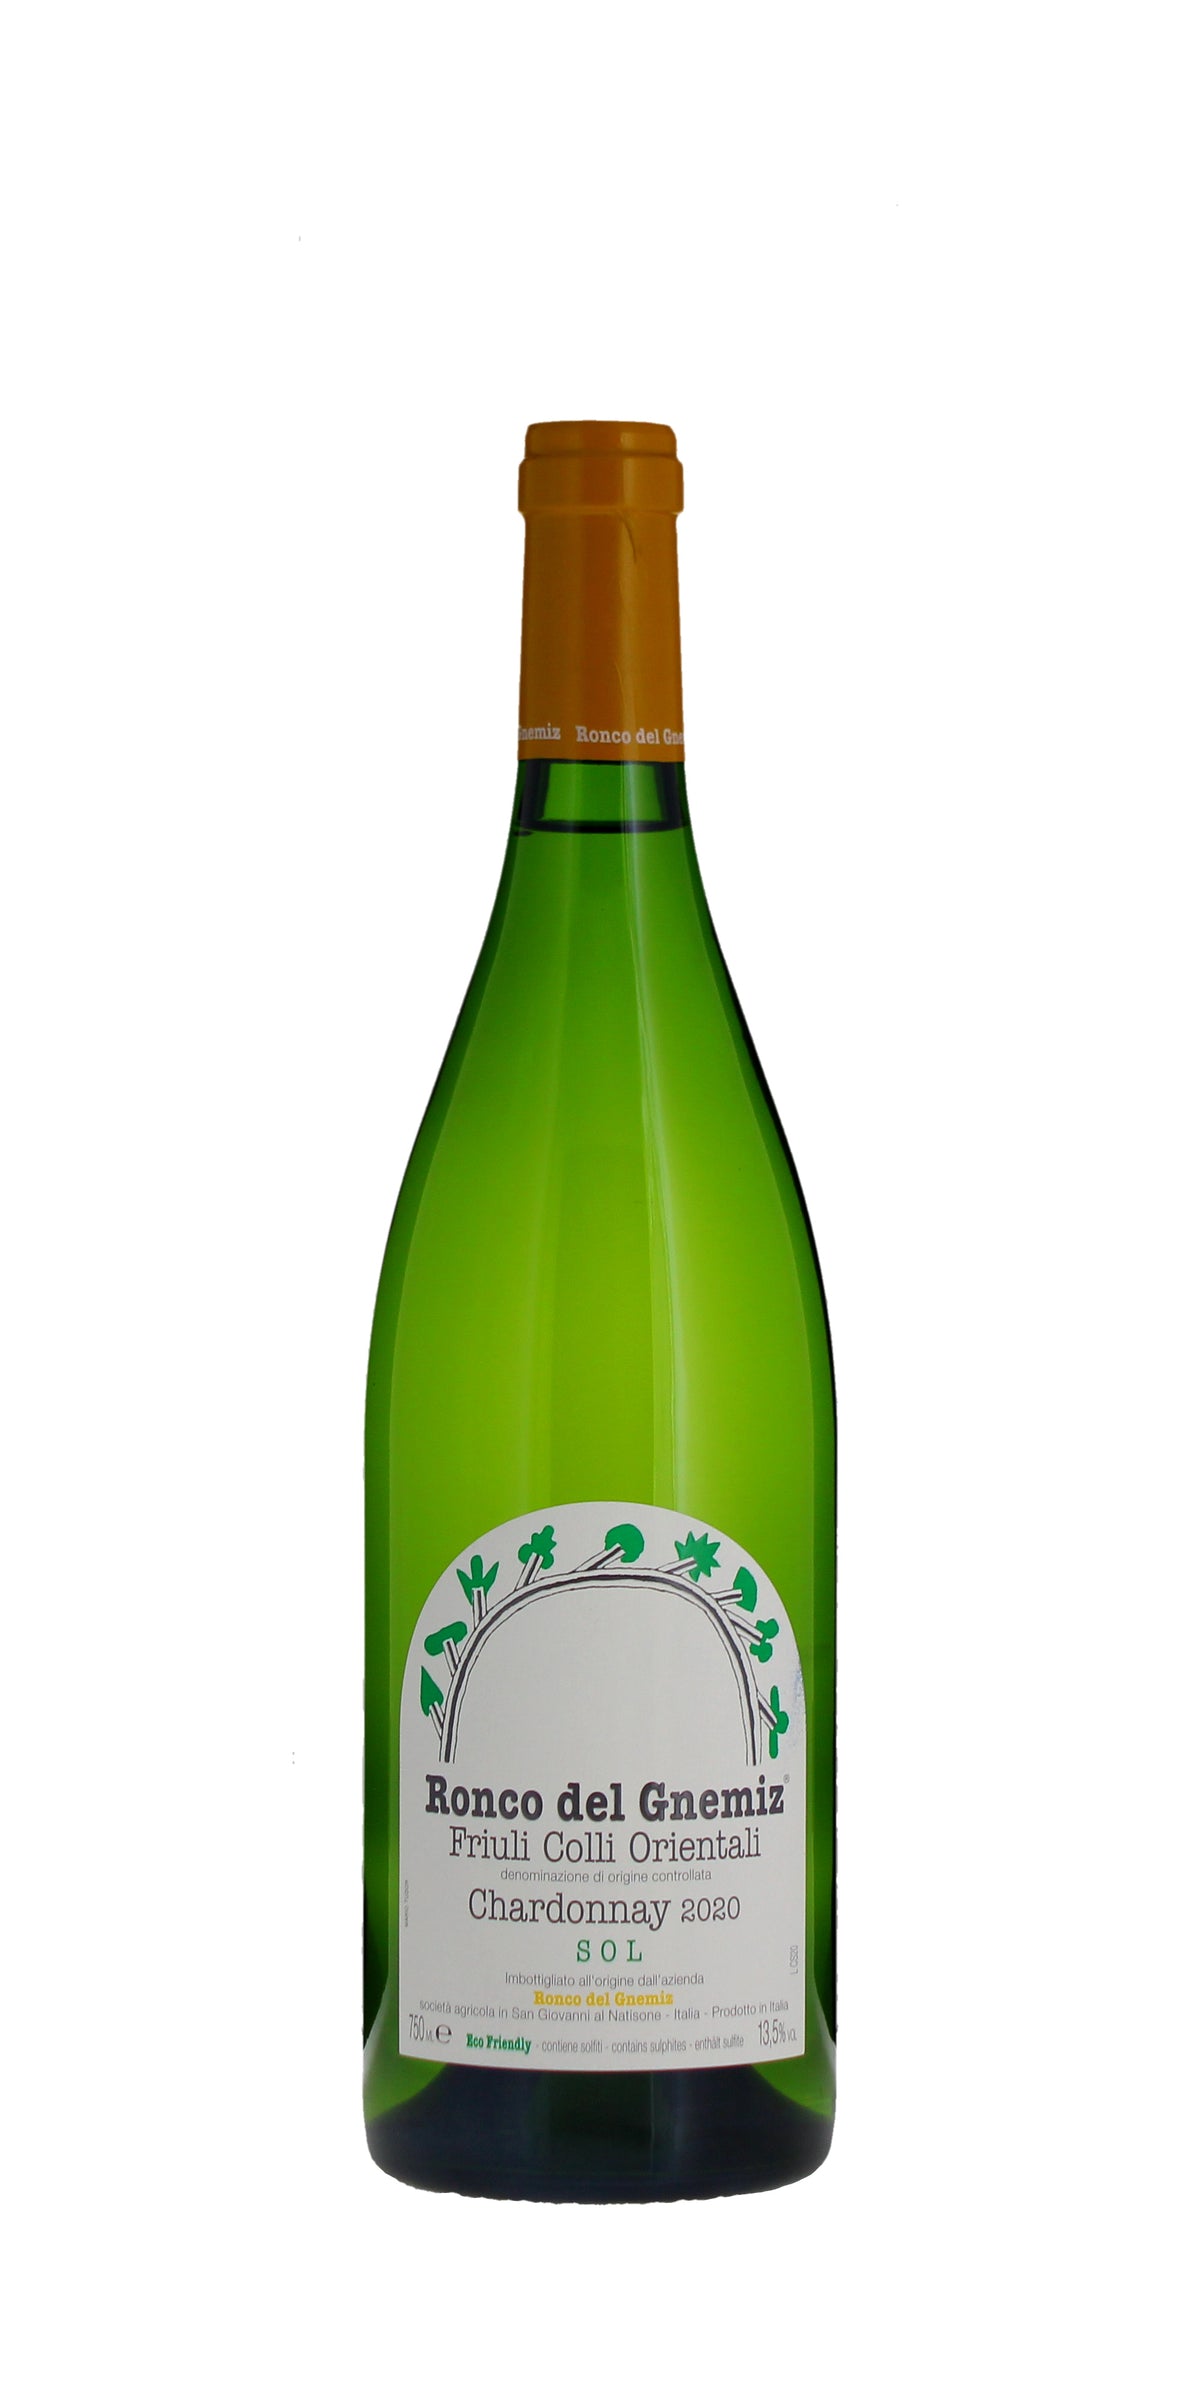 Ronco del Gnemiz Chardonnay Sol, Friuli Colli Orientali, Italy 2020